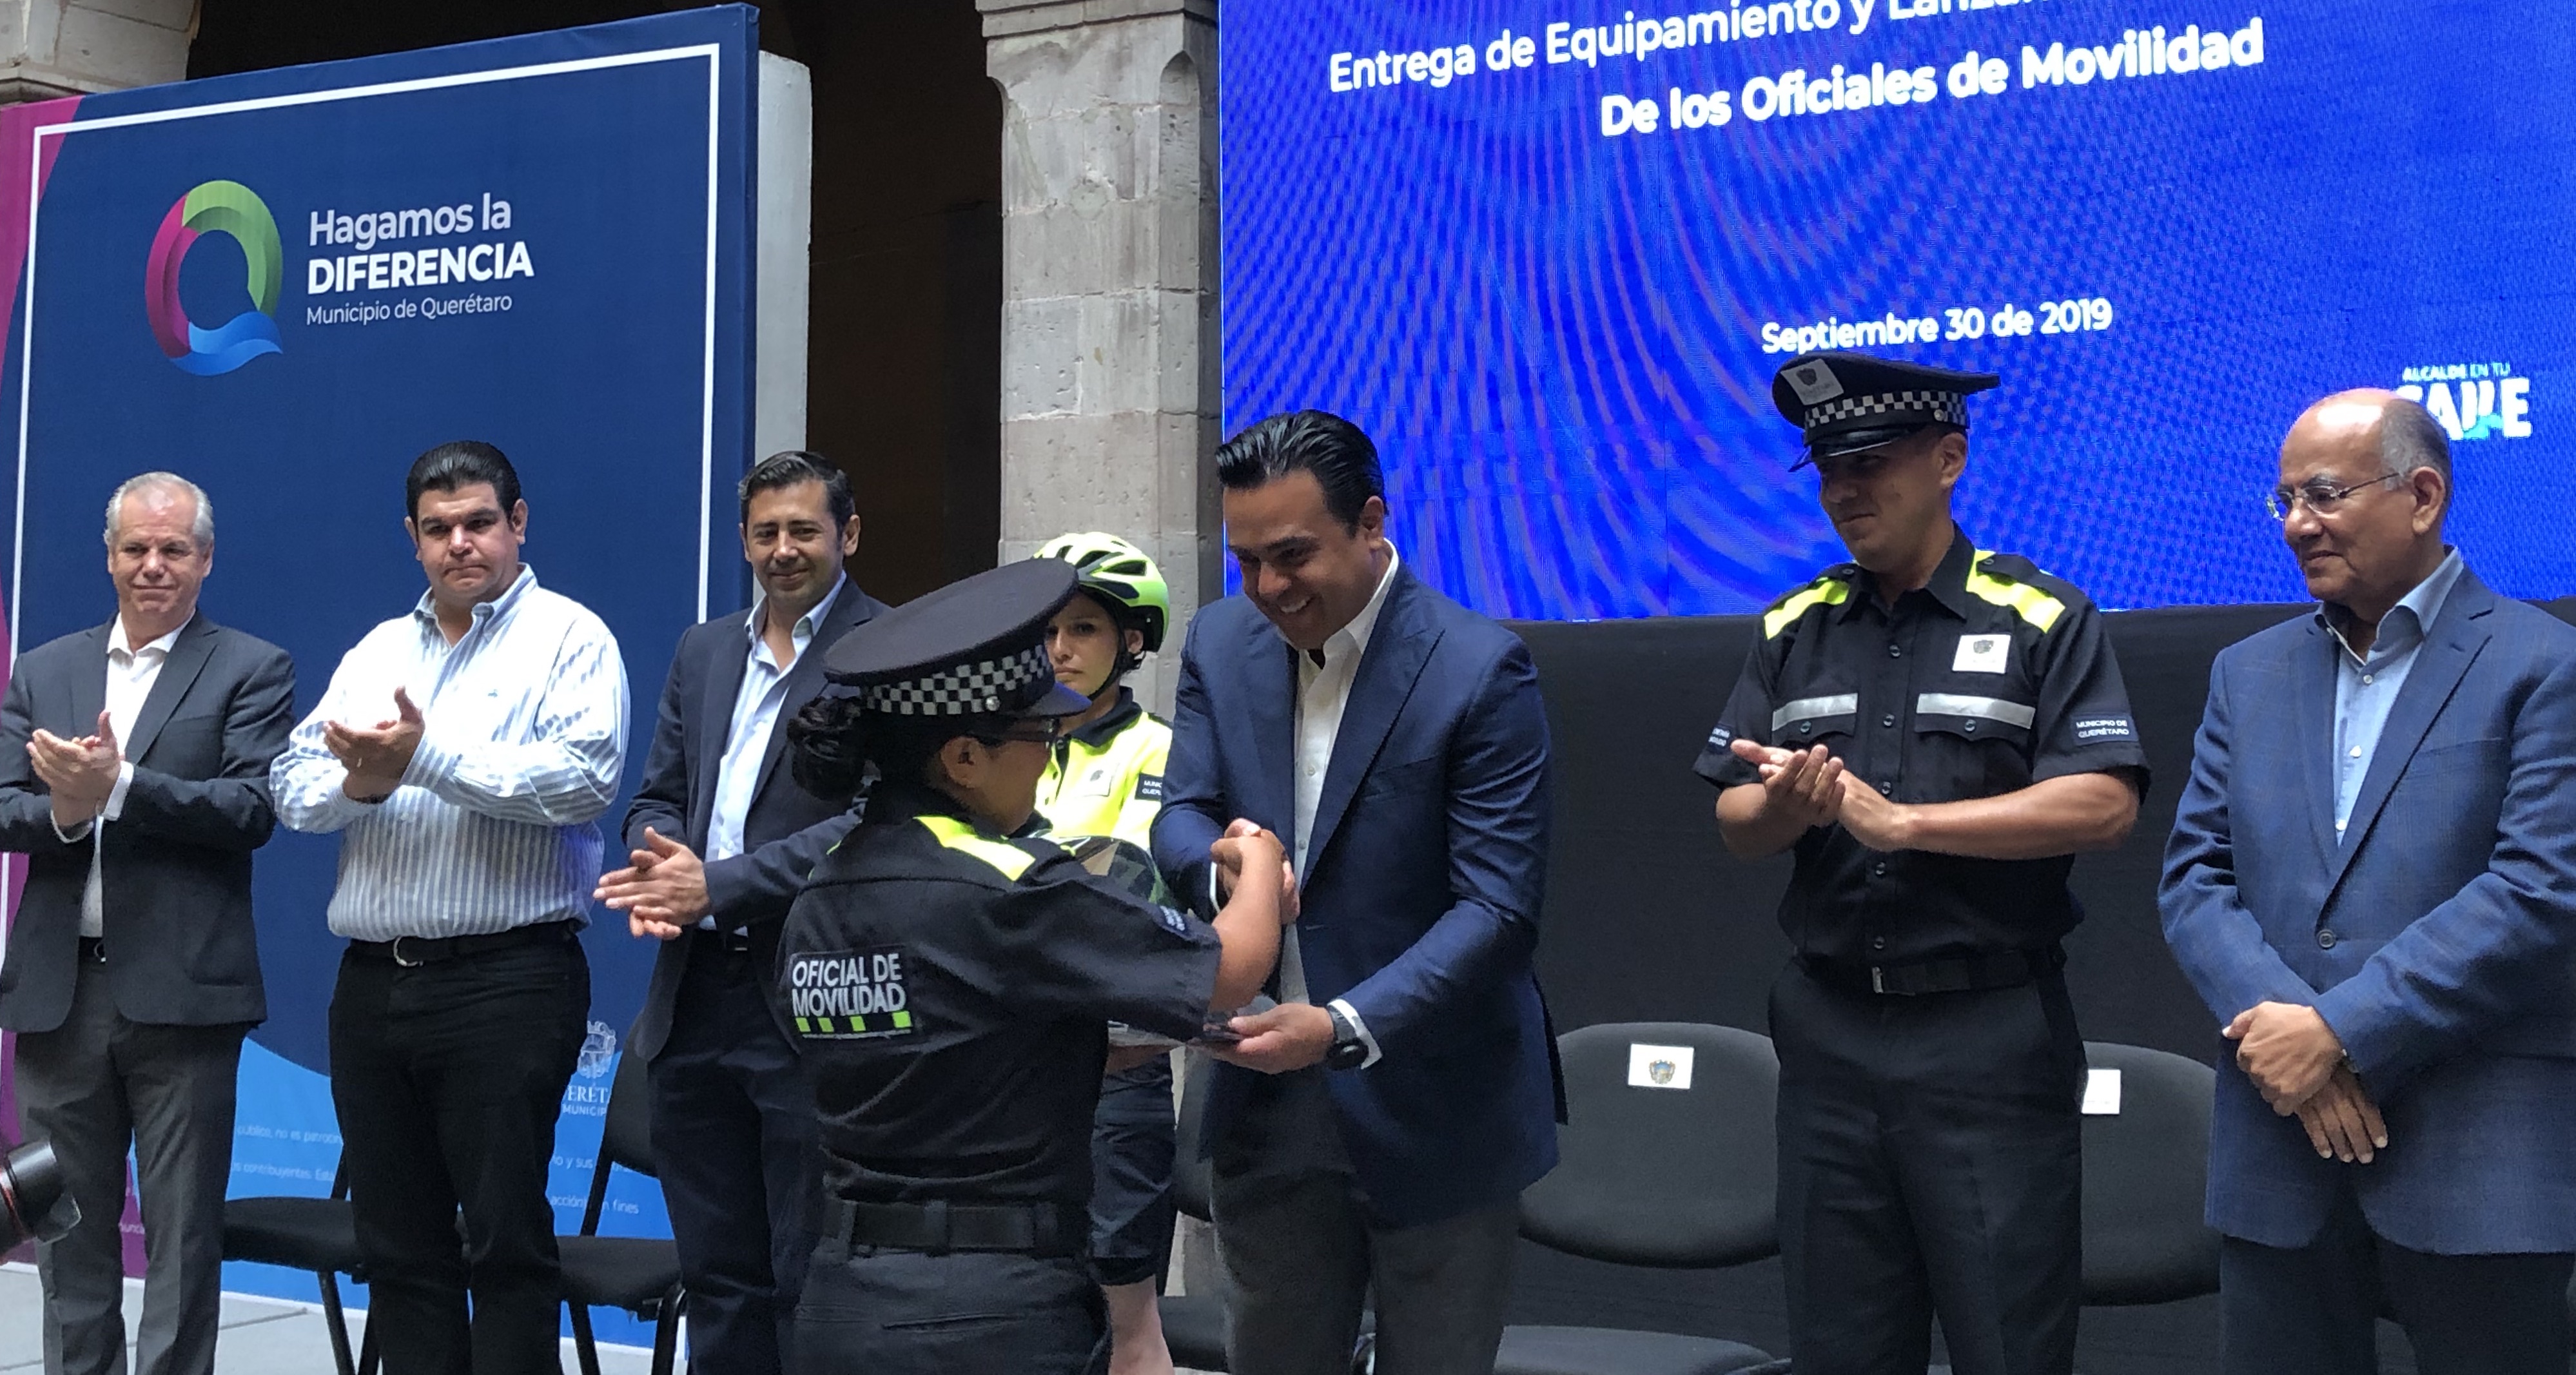  Invierte municipio de Querétaro 6 mdp en nuevo equipo para agentes de movilidad